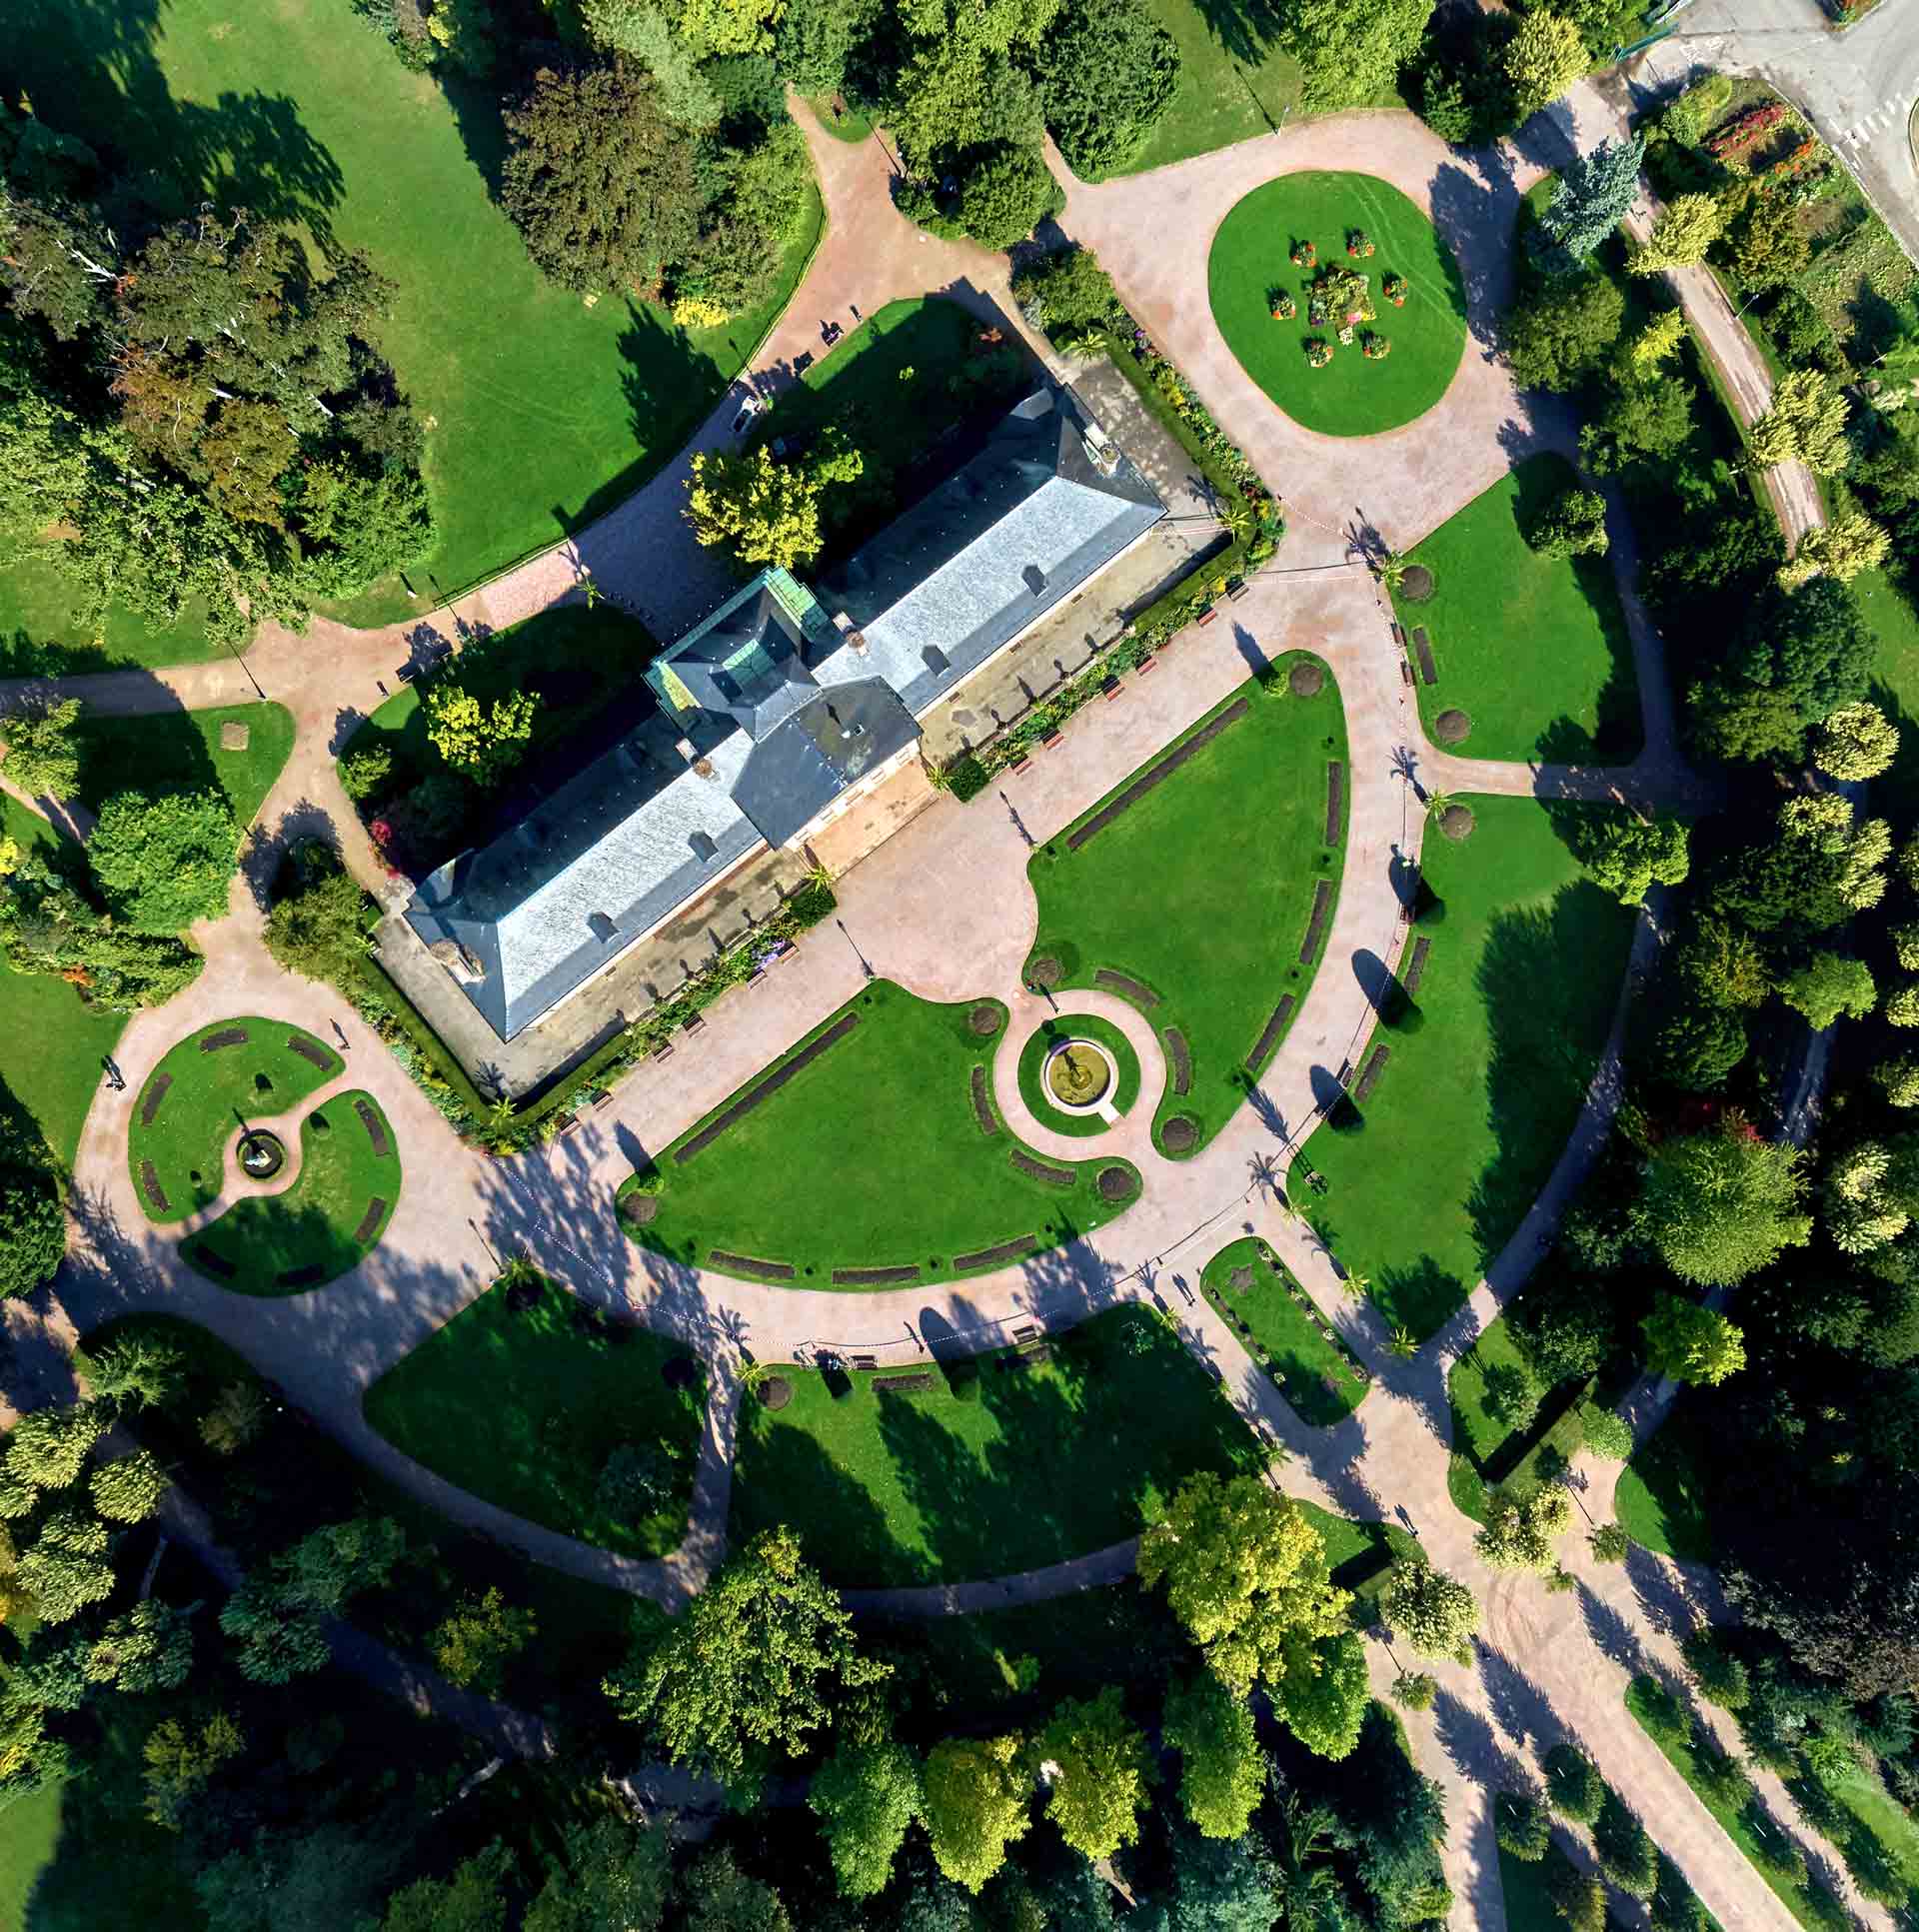 Prise de vue aérienne réalisée par drone du Pavillon Joséphine au Parc de l'Orangerie à Strasbourg